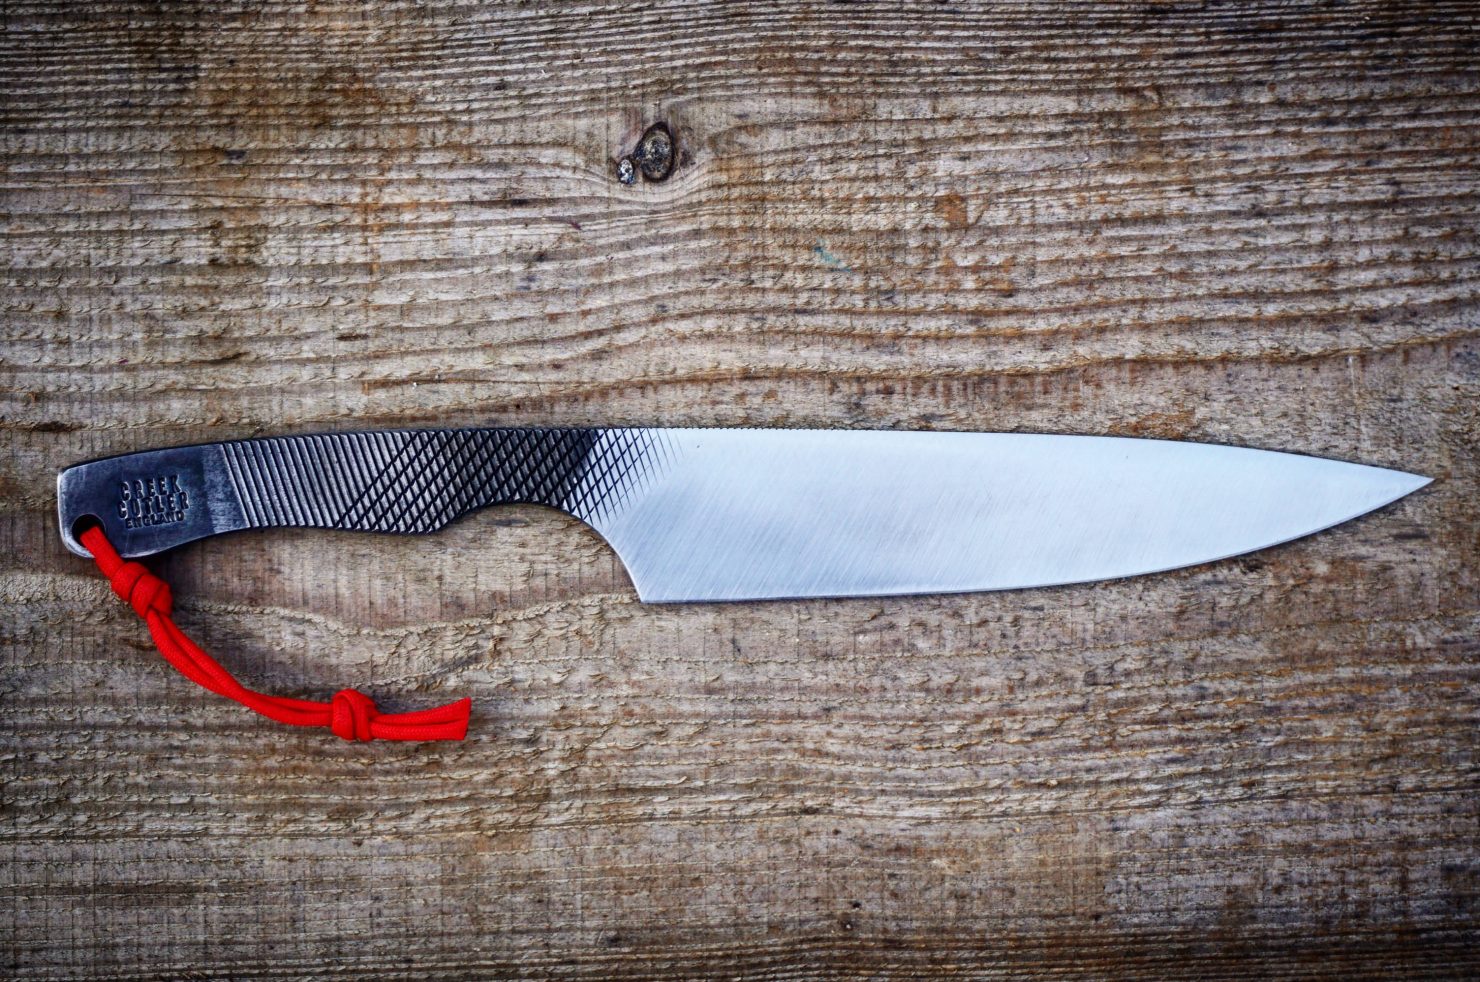 Handmade Repurposed File Knives